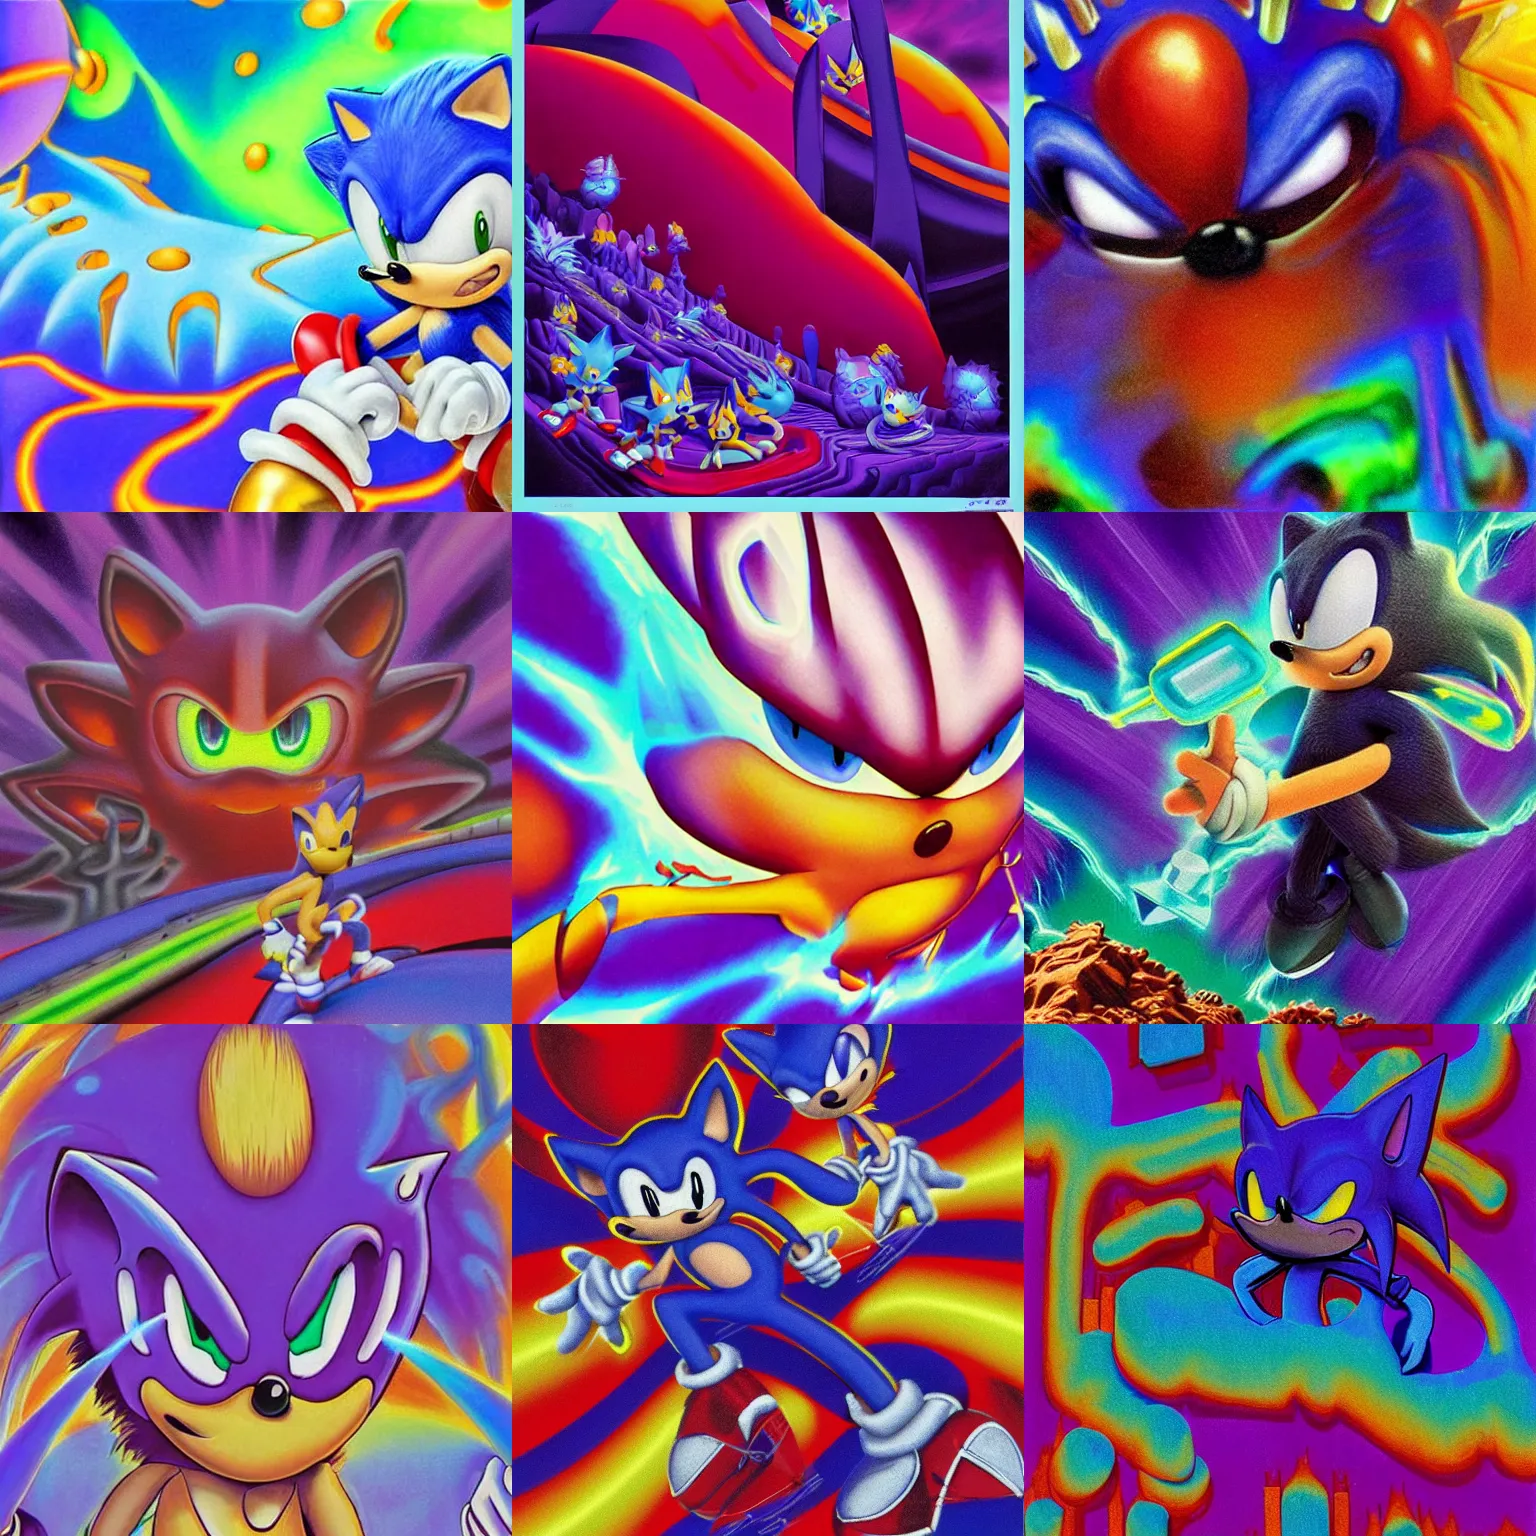 Shadow the Hedgehog - Sonic Retro